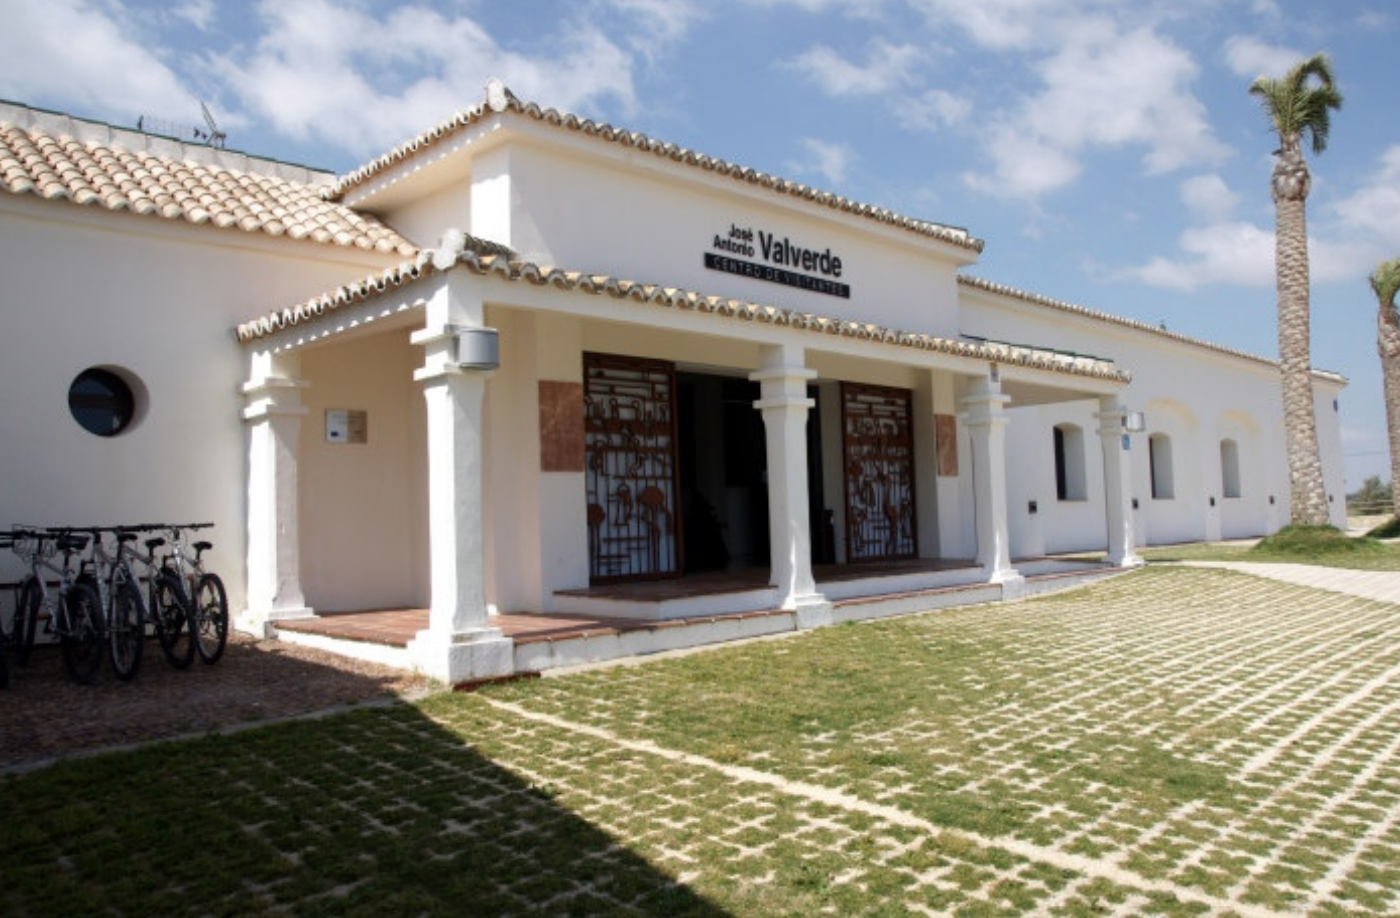 Centro de Visitantes José Antonio Valverde de la Laguna de Fuente de Piedra